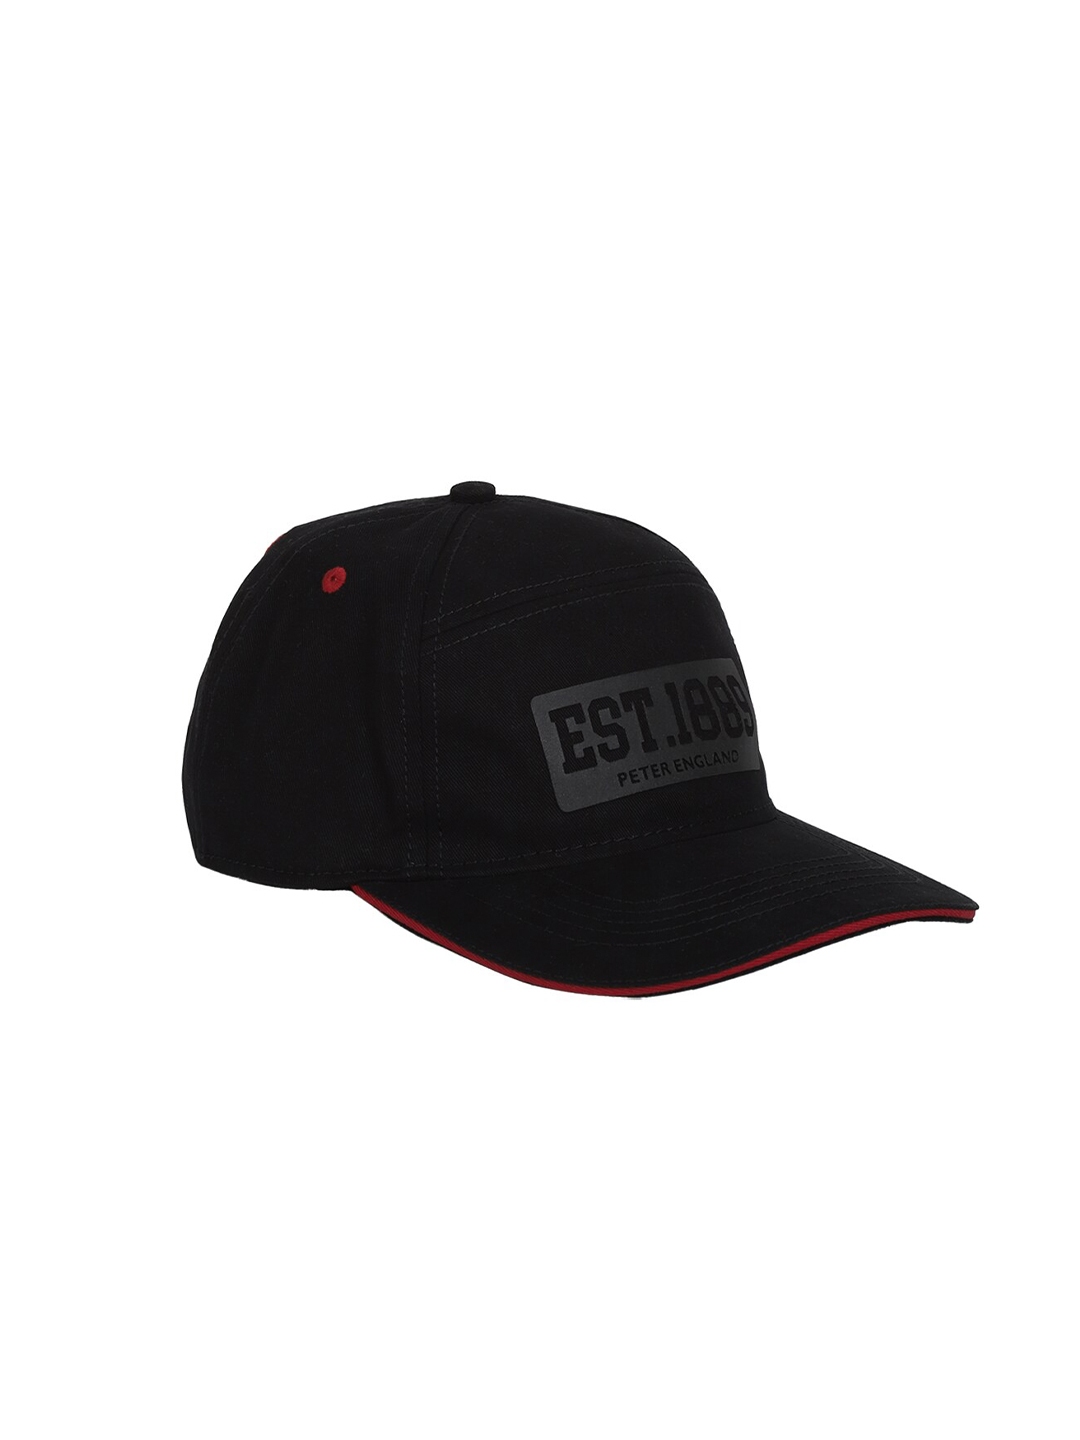 Buy Peter England Men Black & Red Printed Baseball Cap - Caps for Men ...